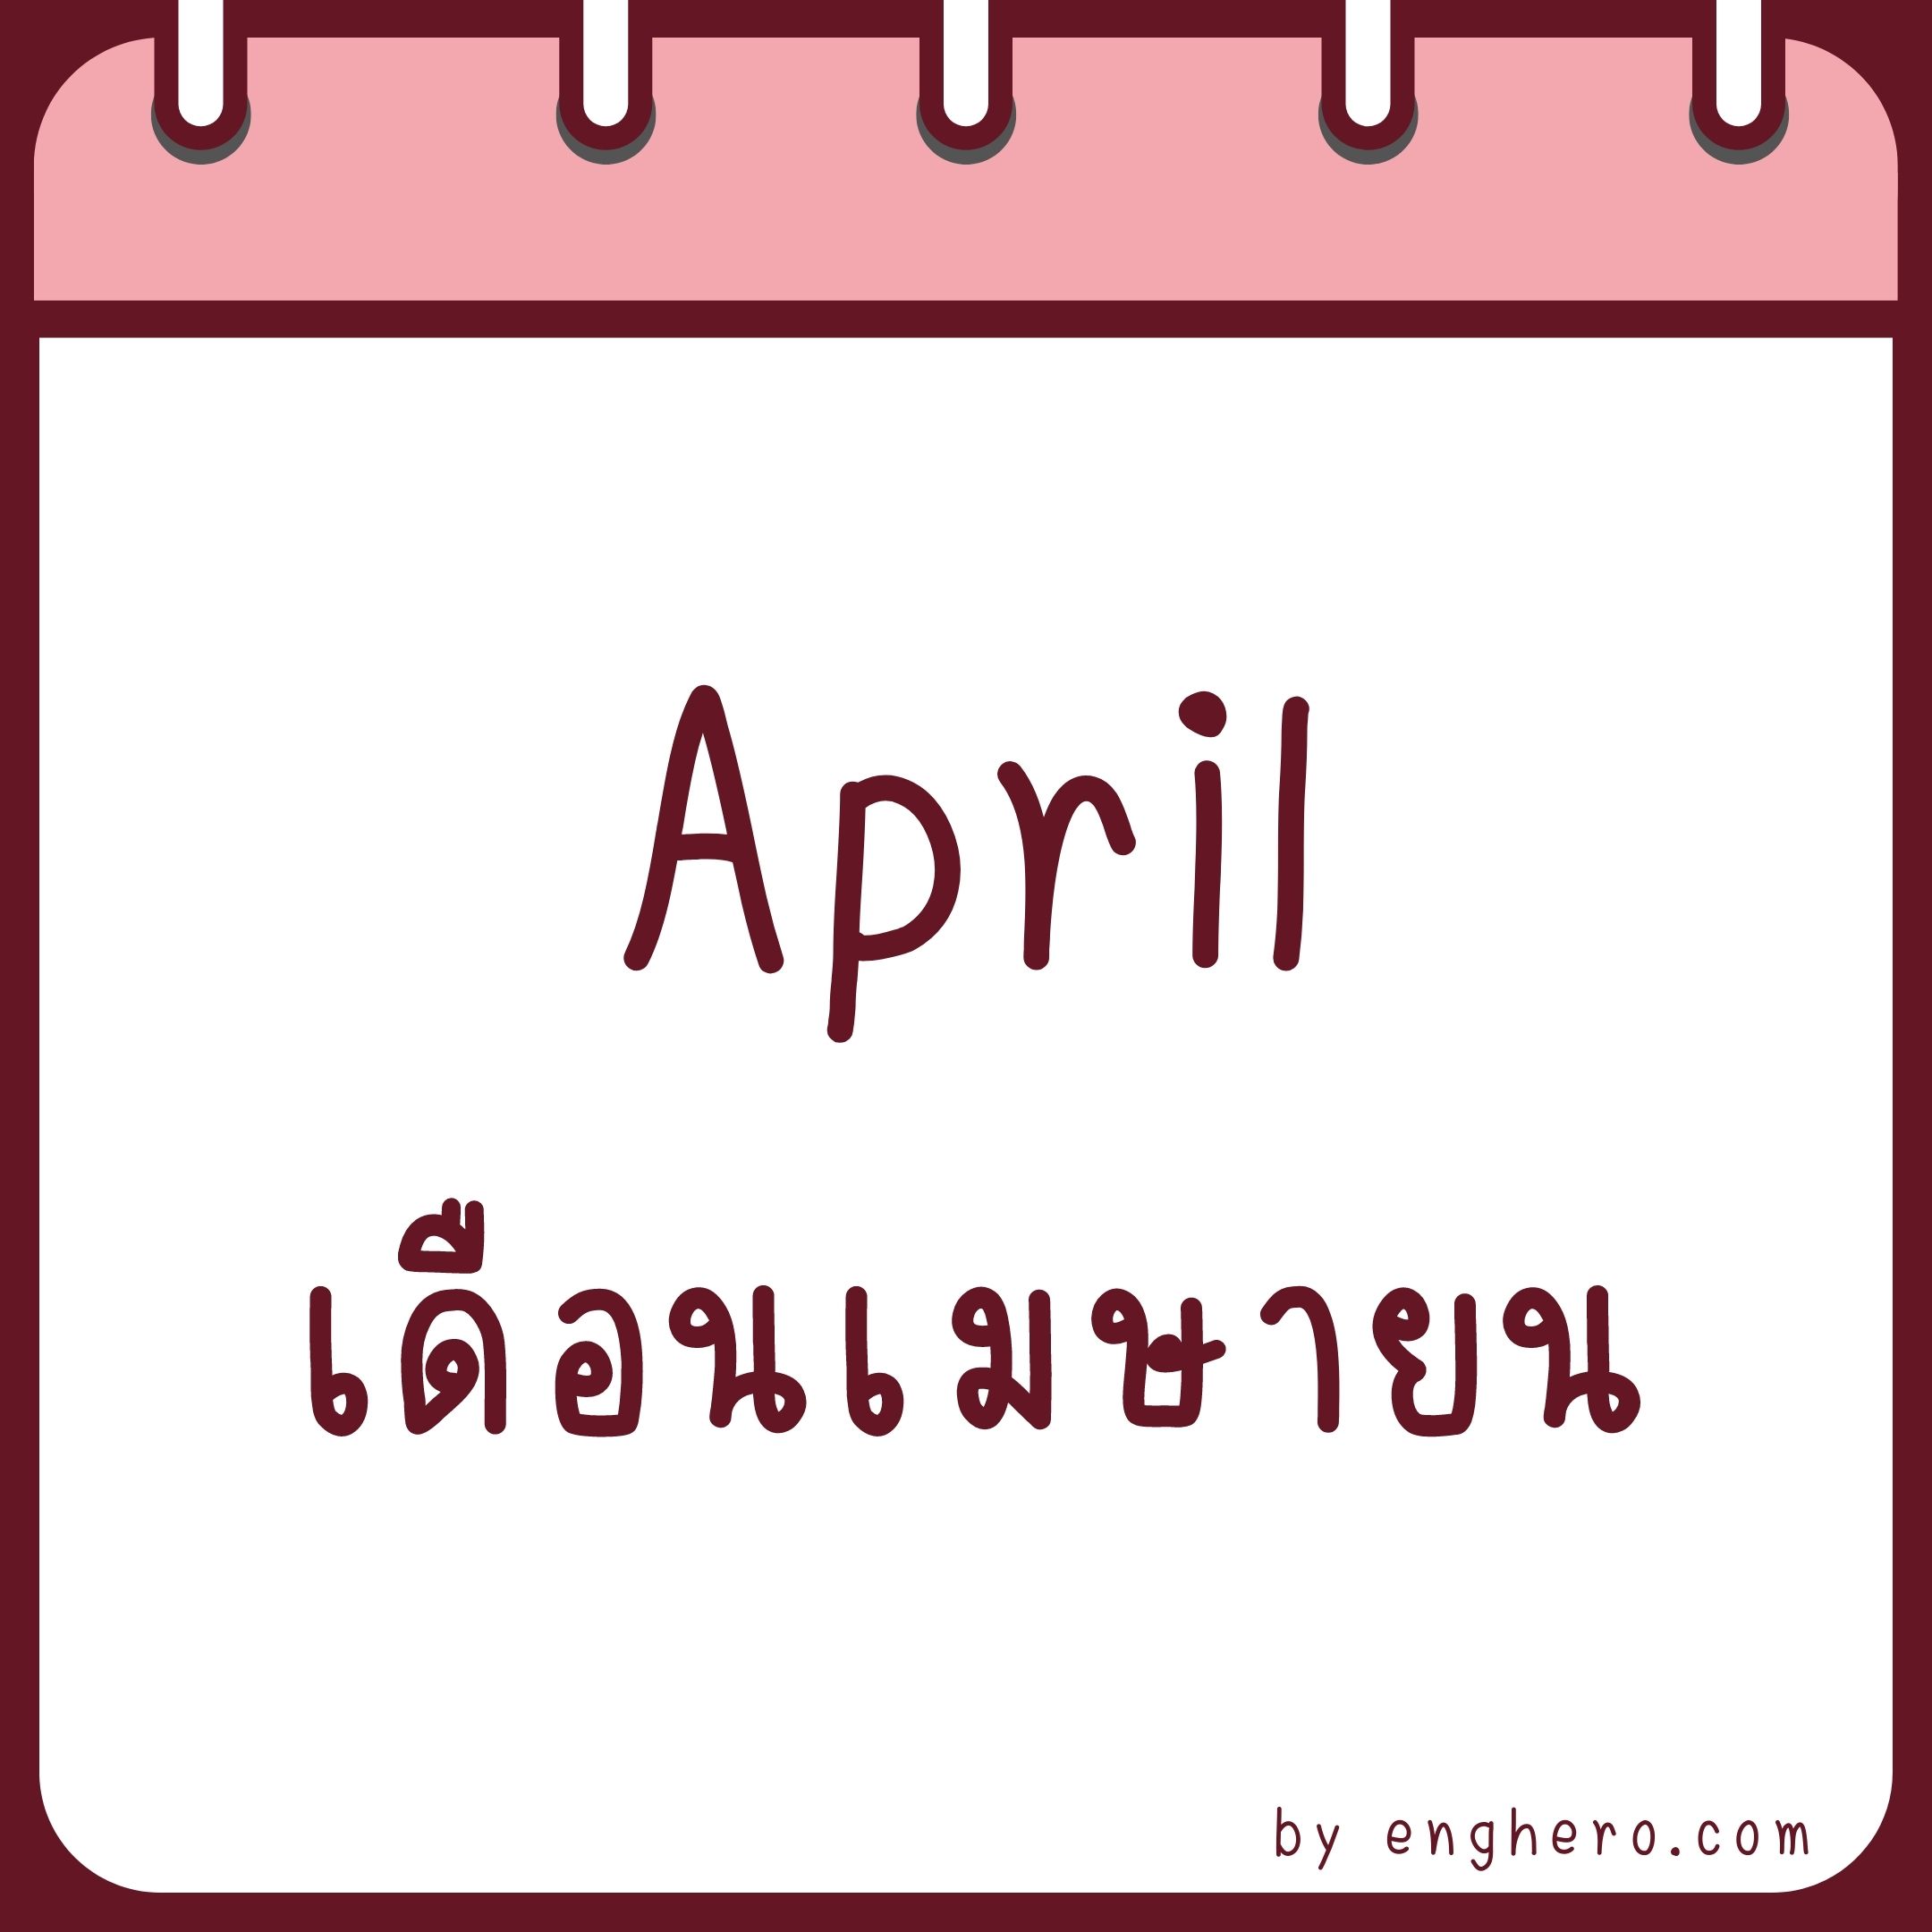 เดือนเมษายน ภาษาอังกฤษ คือ April